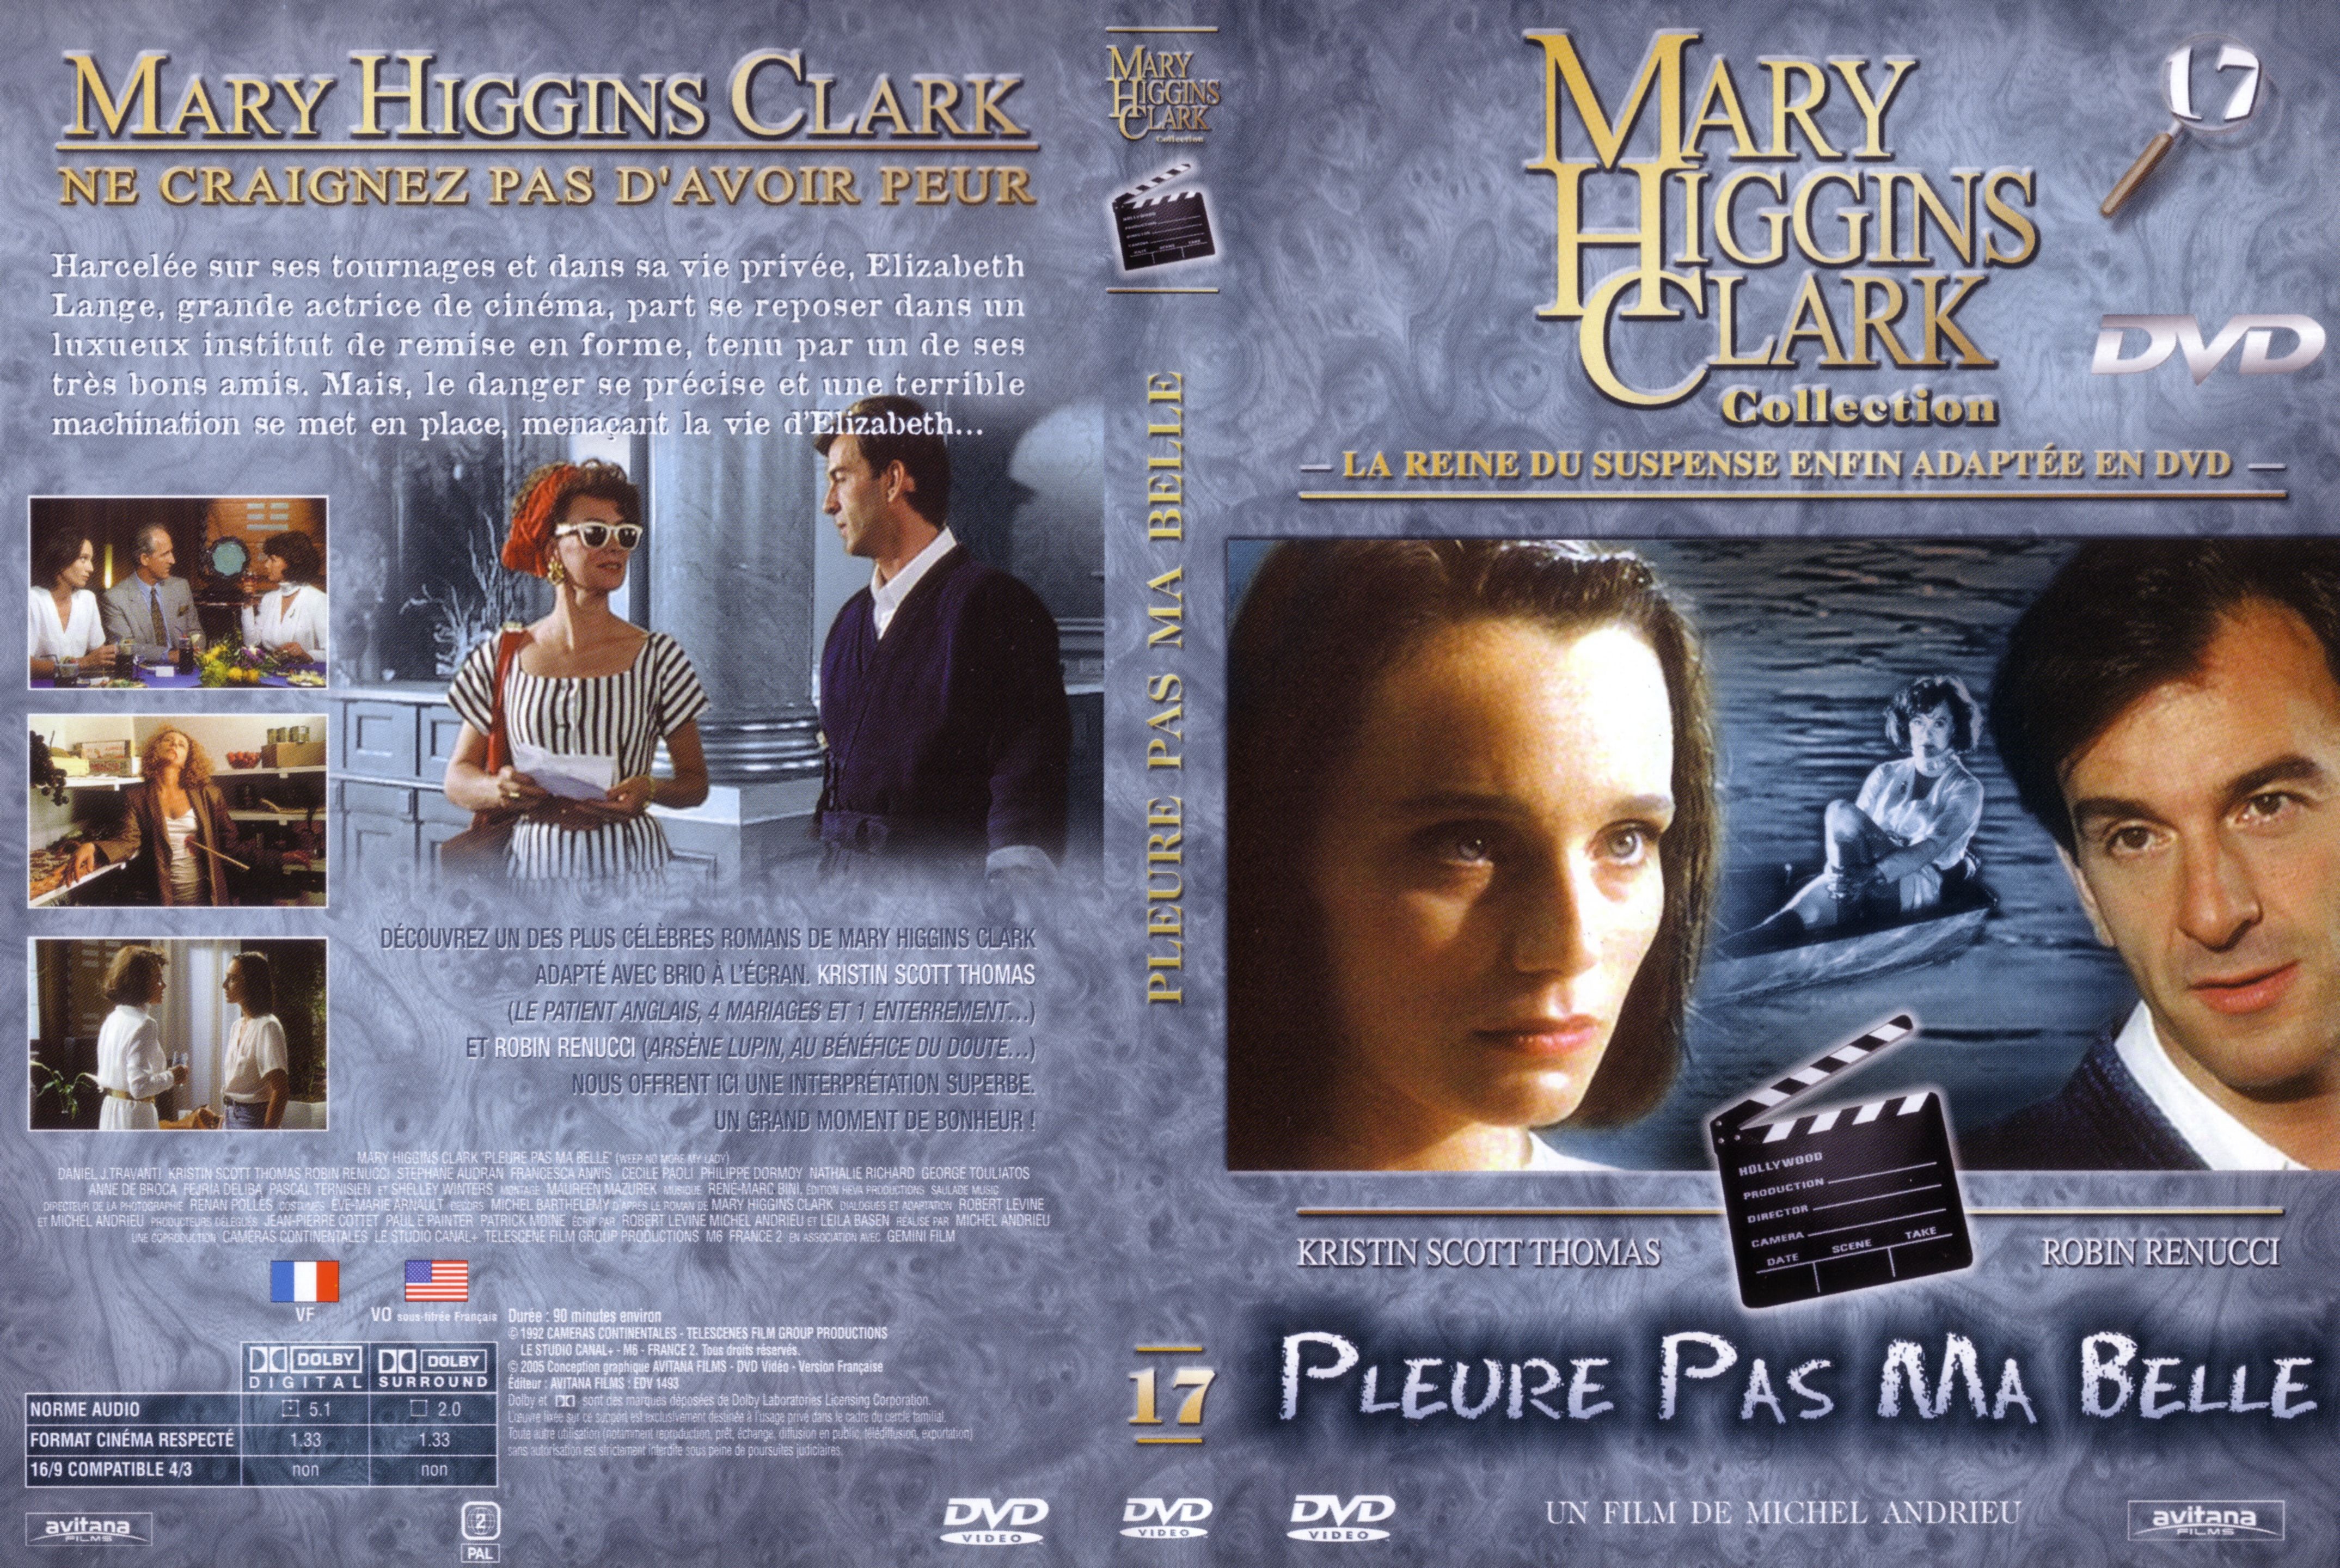 Jaquette DVD Mary Higgins Clark vol 17 - Pleure pas ma belle